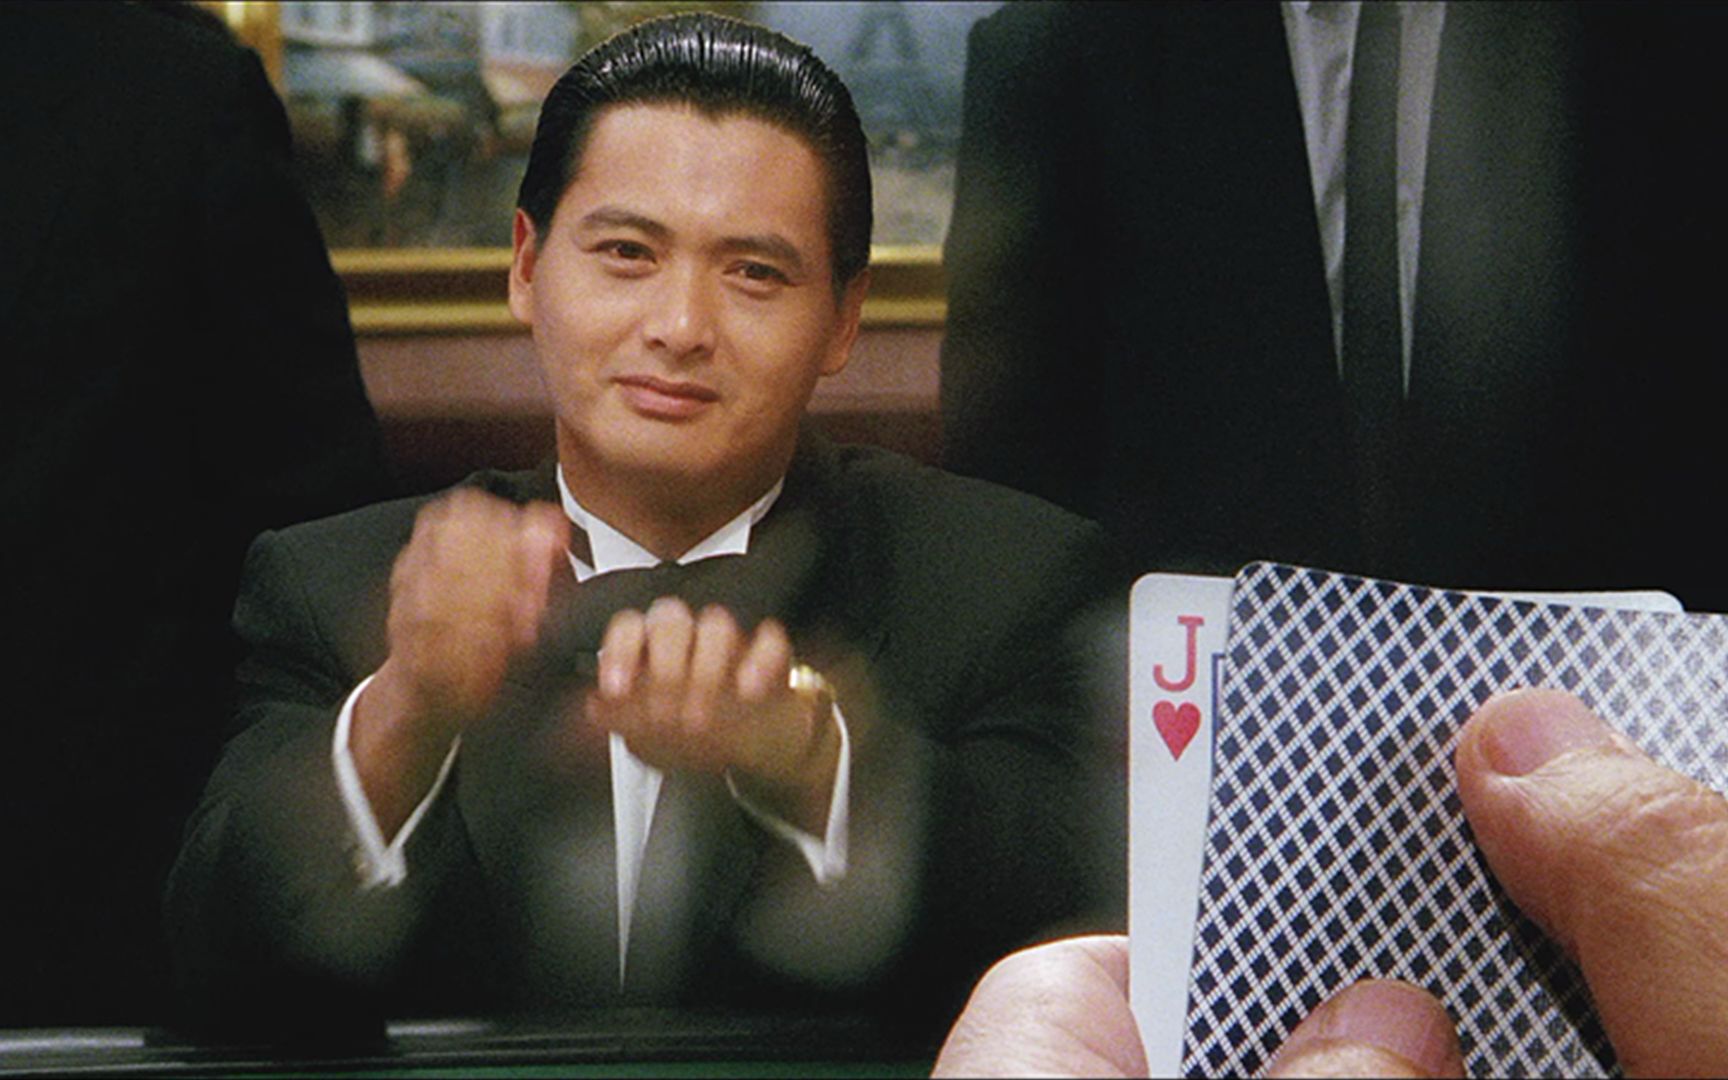 电影《赌神》冷知识:周润发牌桌上摸戒指的习惯,原来是在模仿他